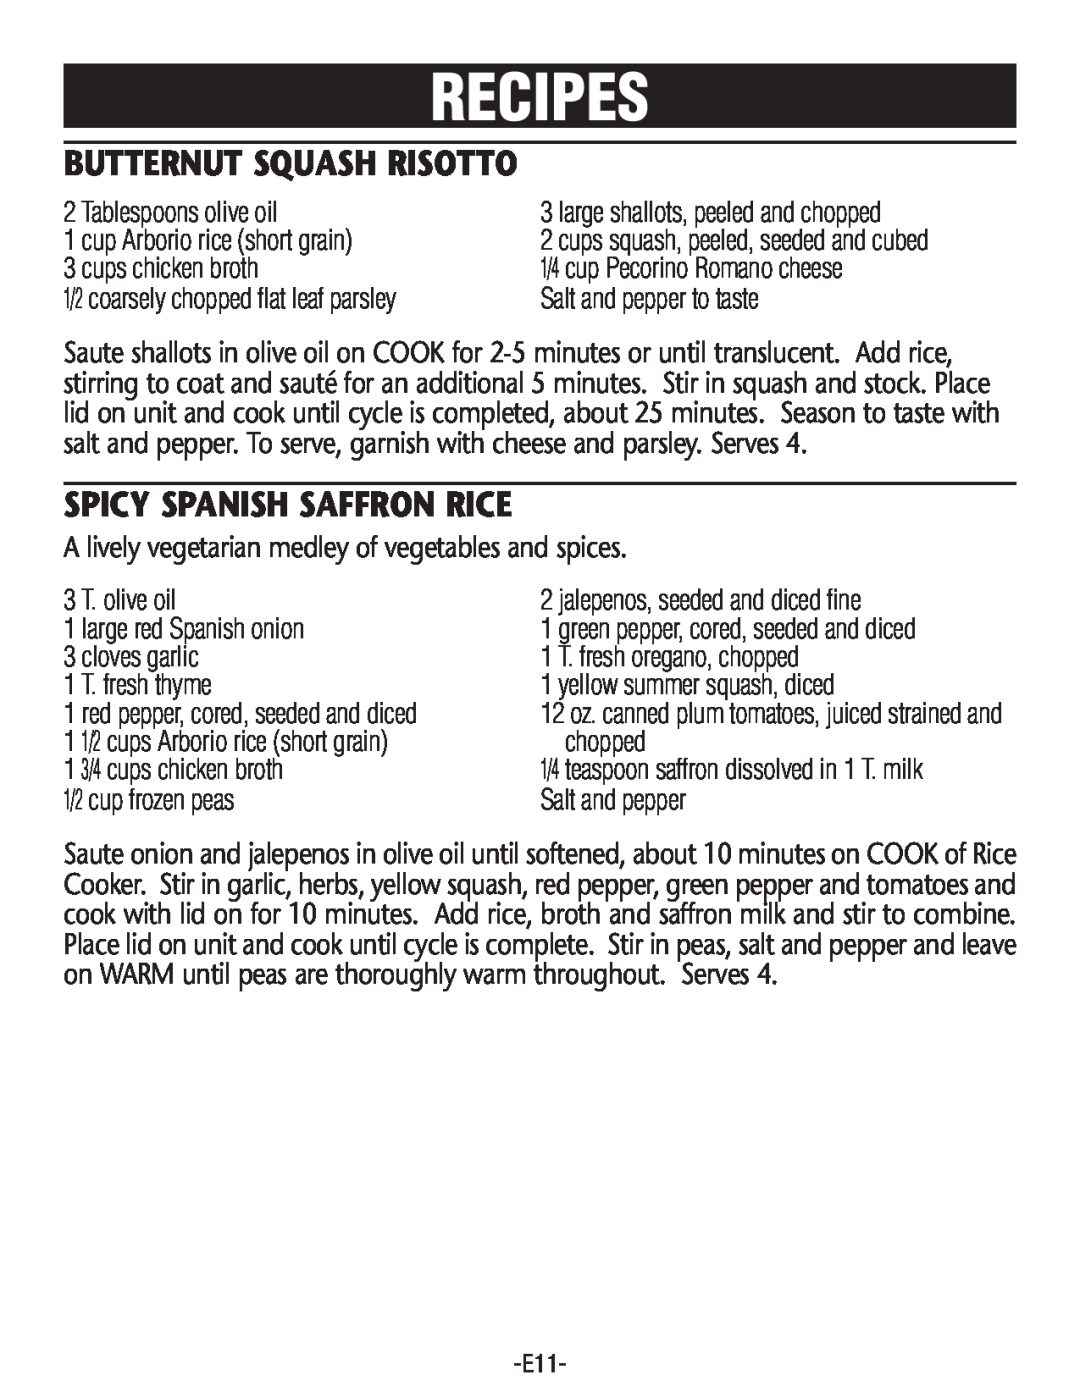 Rival RC101, RC100 manual Recipes, Butternut Squash Risotto, Spicy Spanish Saffron Rice 